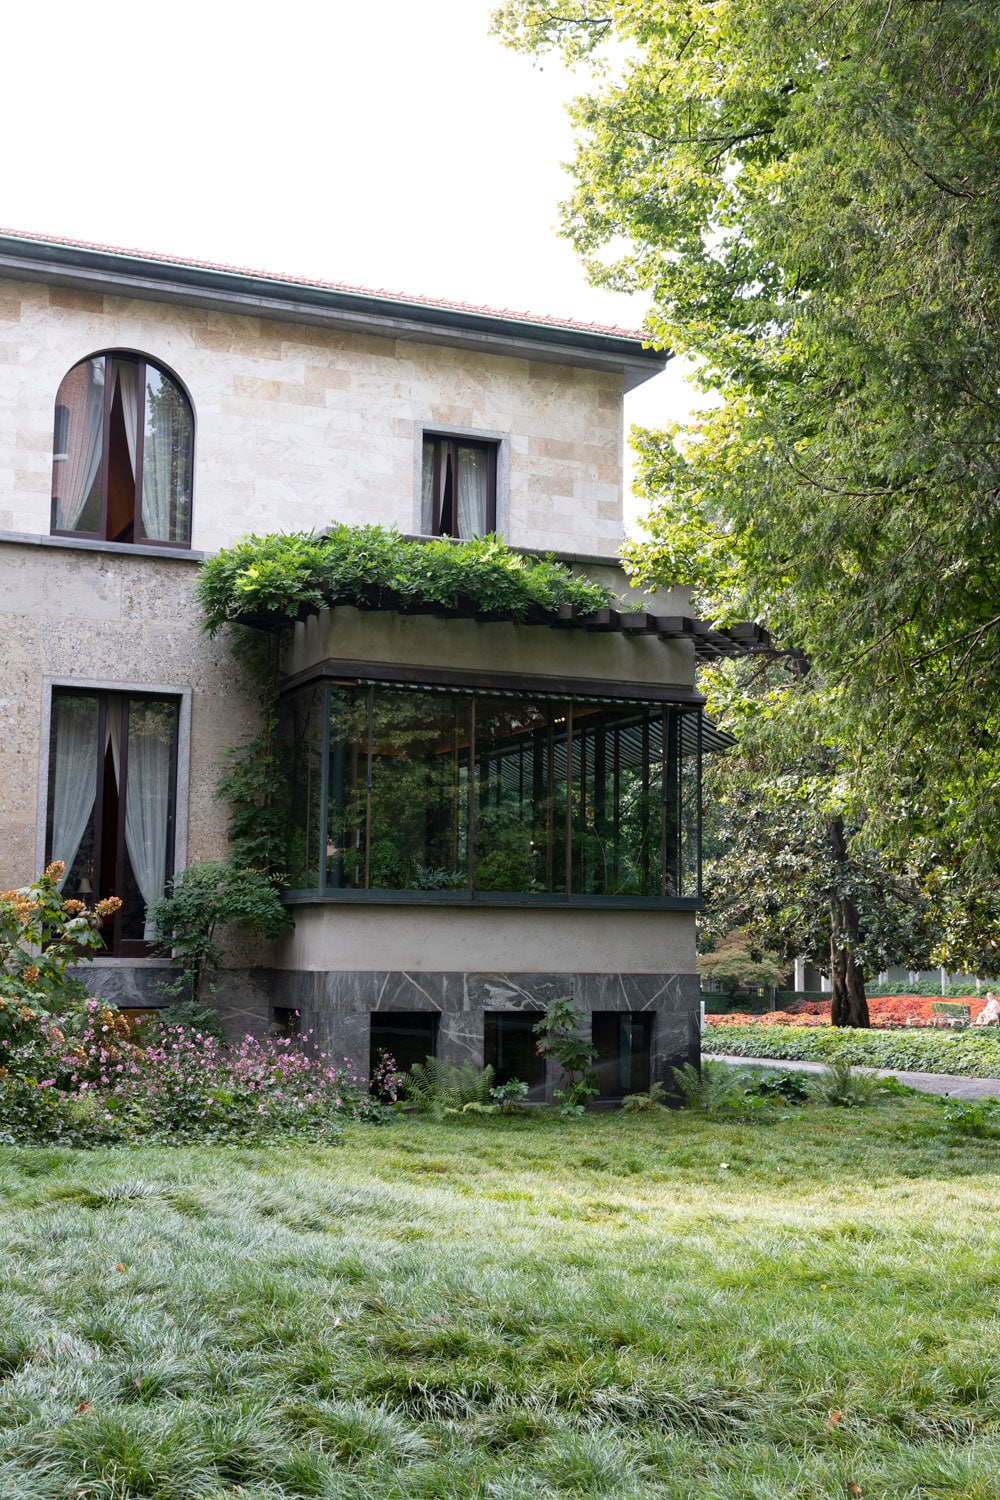 Villa Necchi